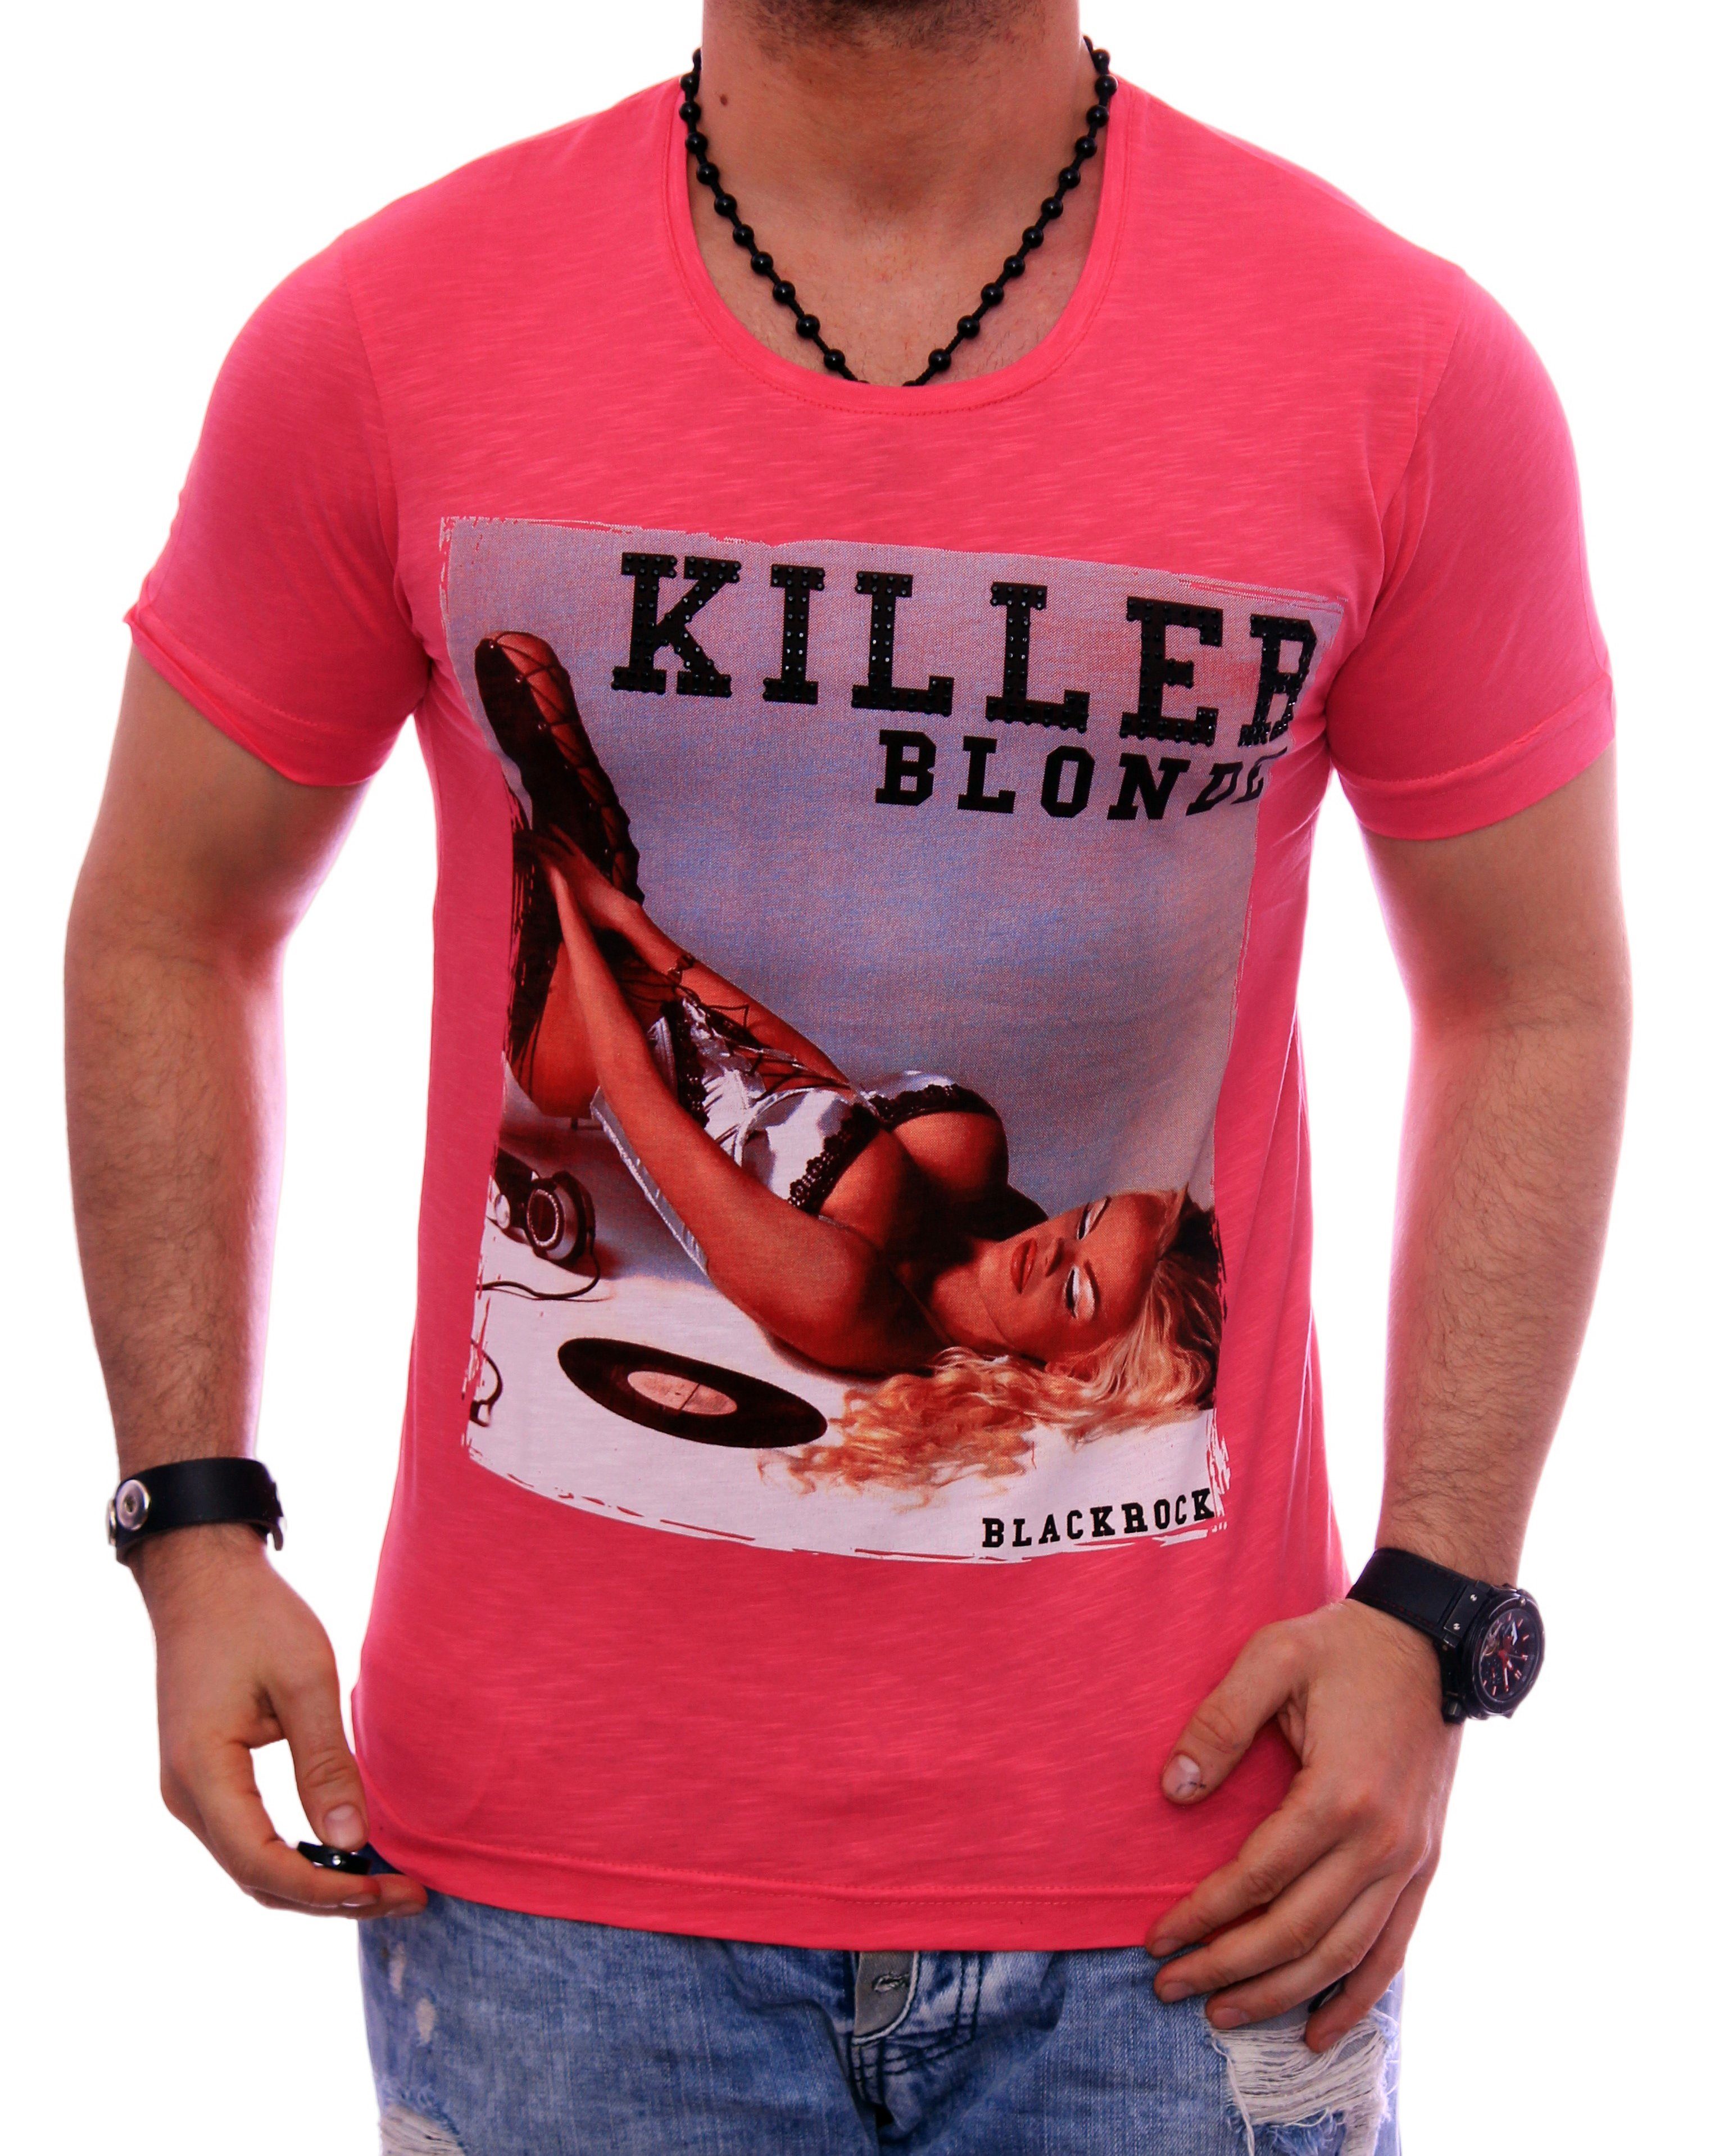 BLACKROCK T-Shirt Herren Shirt T-Shirt Urlaub Motiv kurzarm Rundhals bedruckt Print Strasssteine Slim-Fit Pink